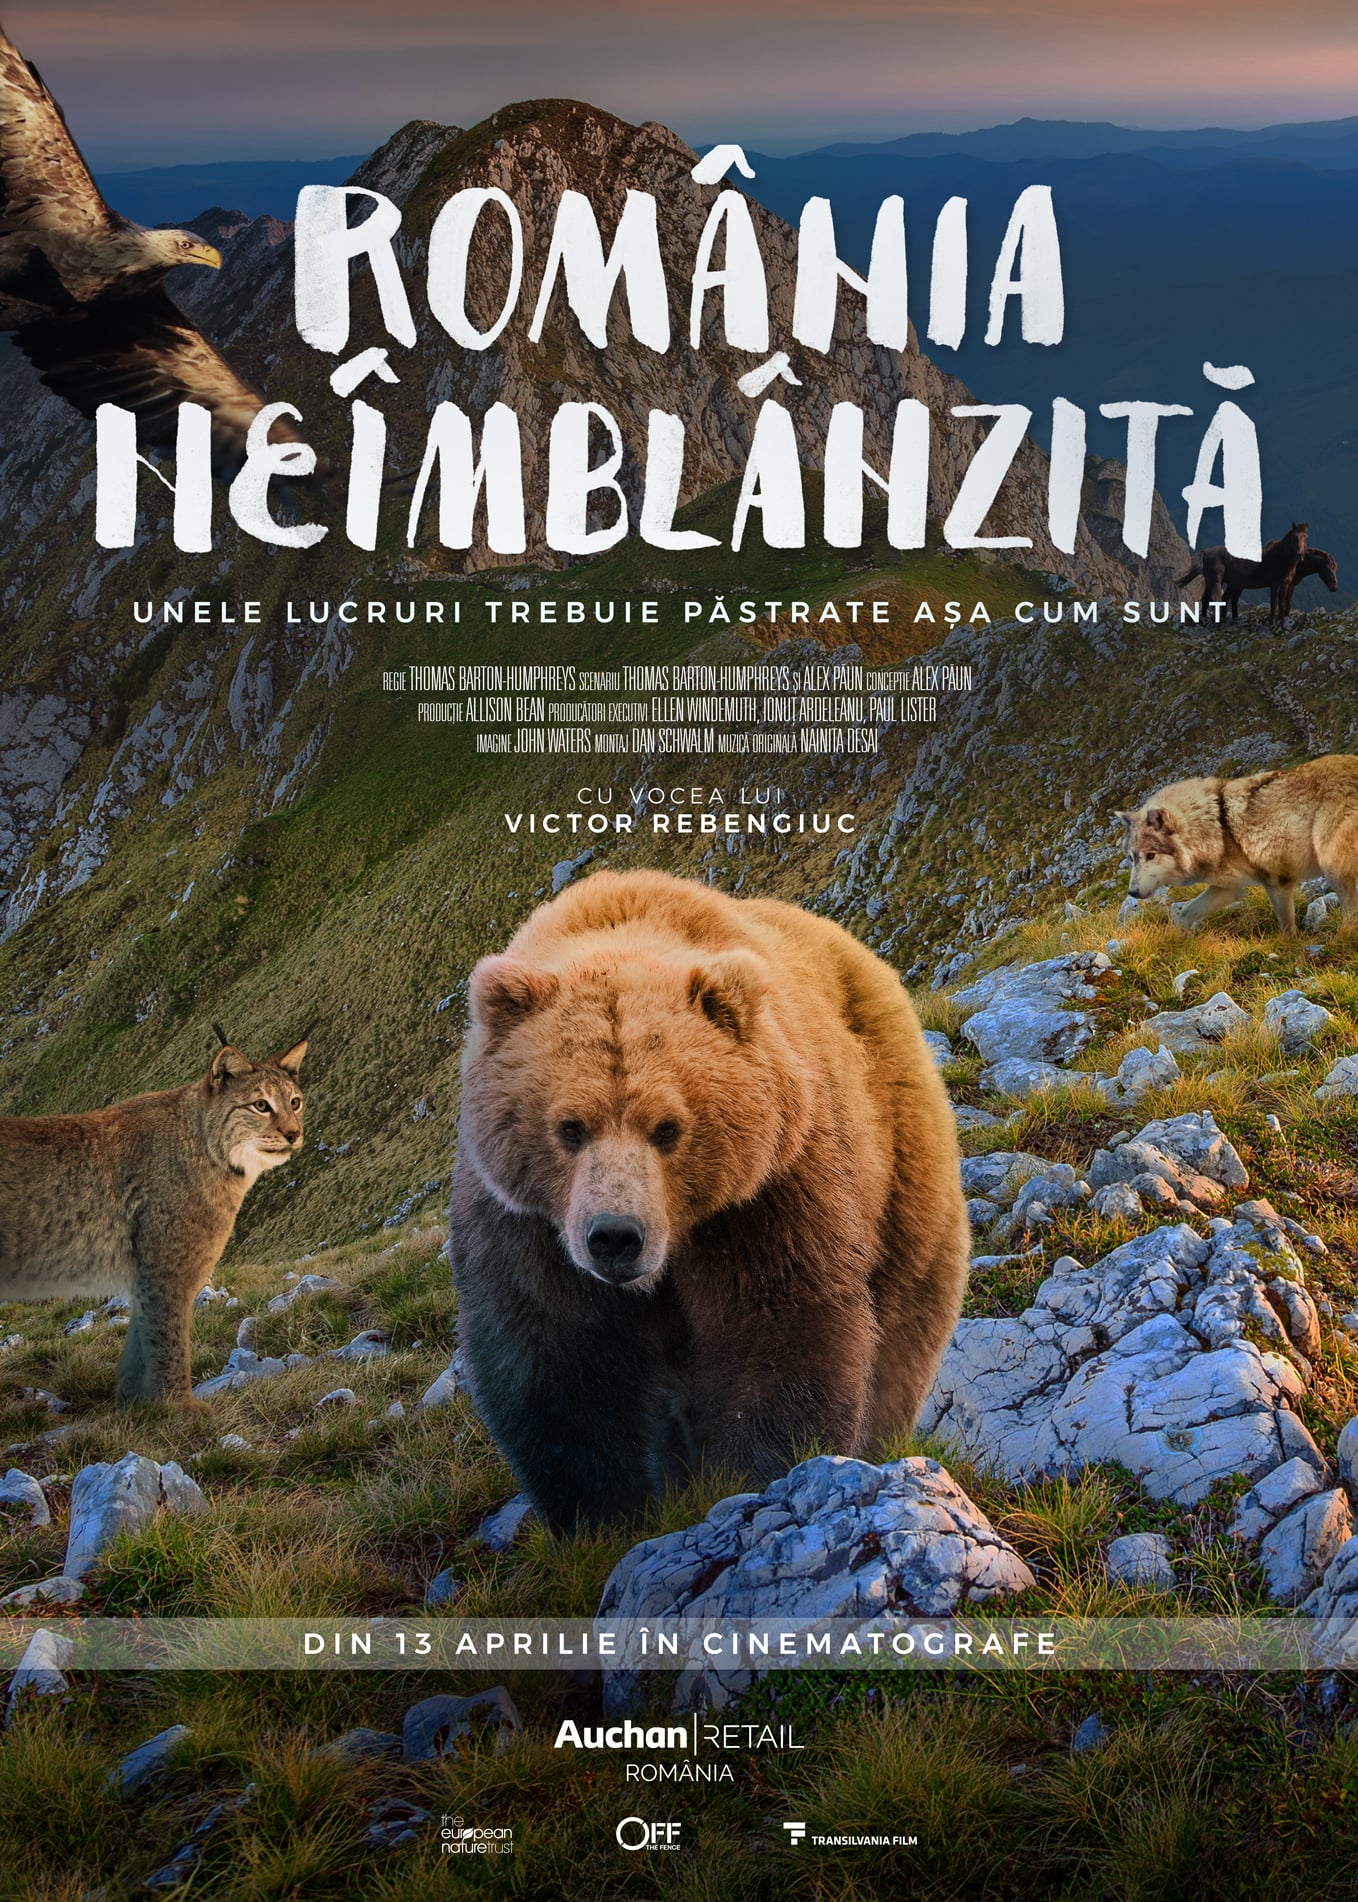 Caratula de ROMÂNIA NEÎMBLÂNZITÃ (Rumania al descubierto) 